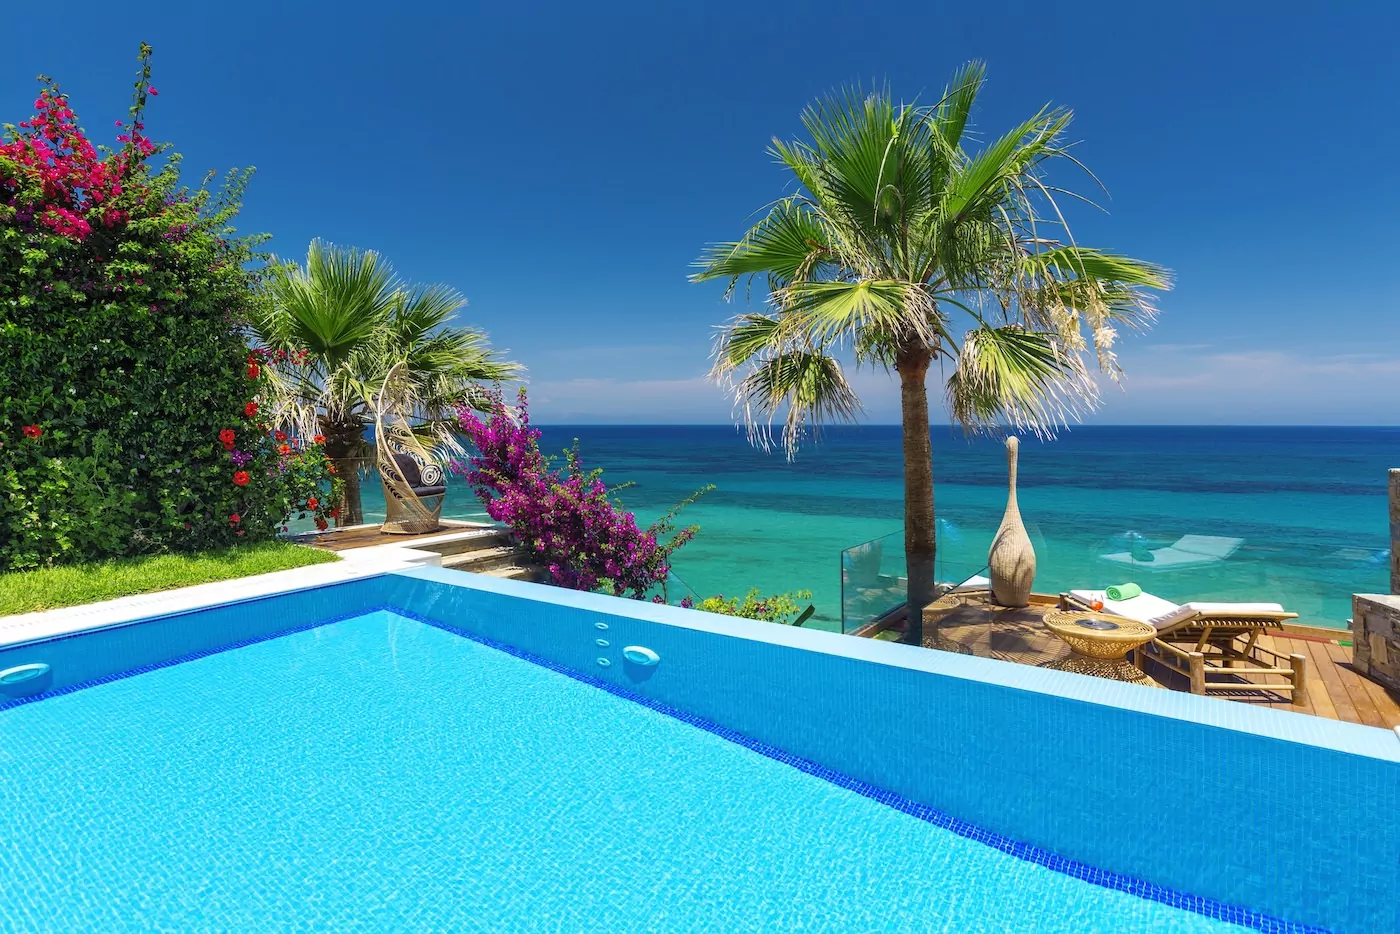 Two-bedroom private ultra luxury villa Greece GRAND PRESIDENTIAL SPA VILLA with private heated pool and private beach Porto Zante Villas & Spa Zakynthos Island